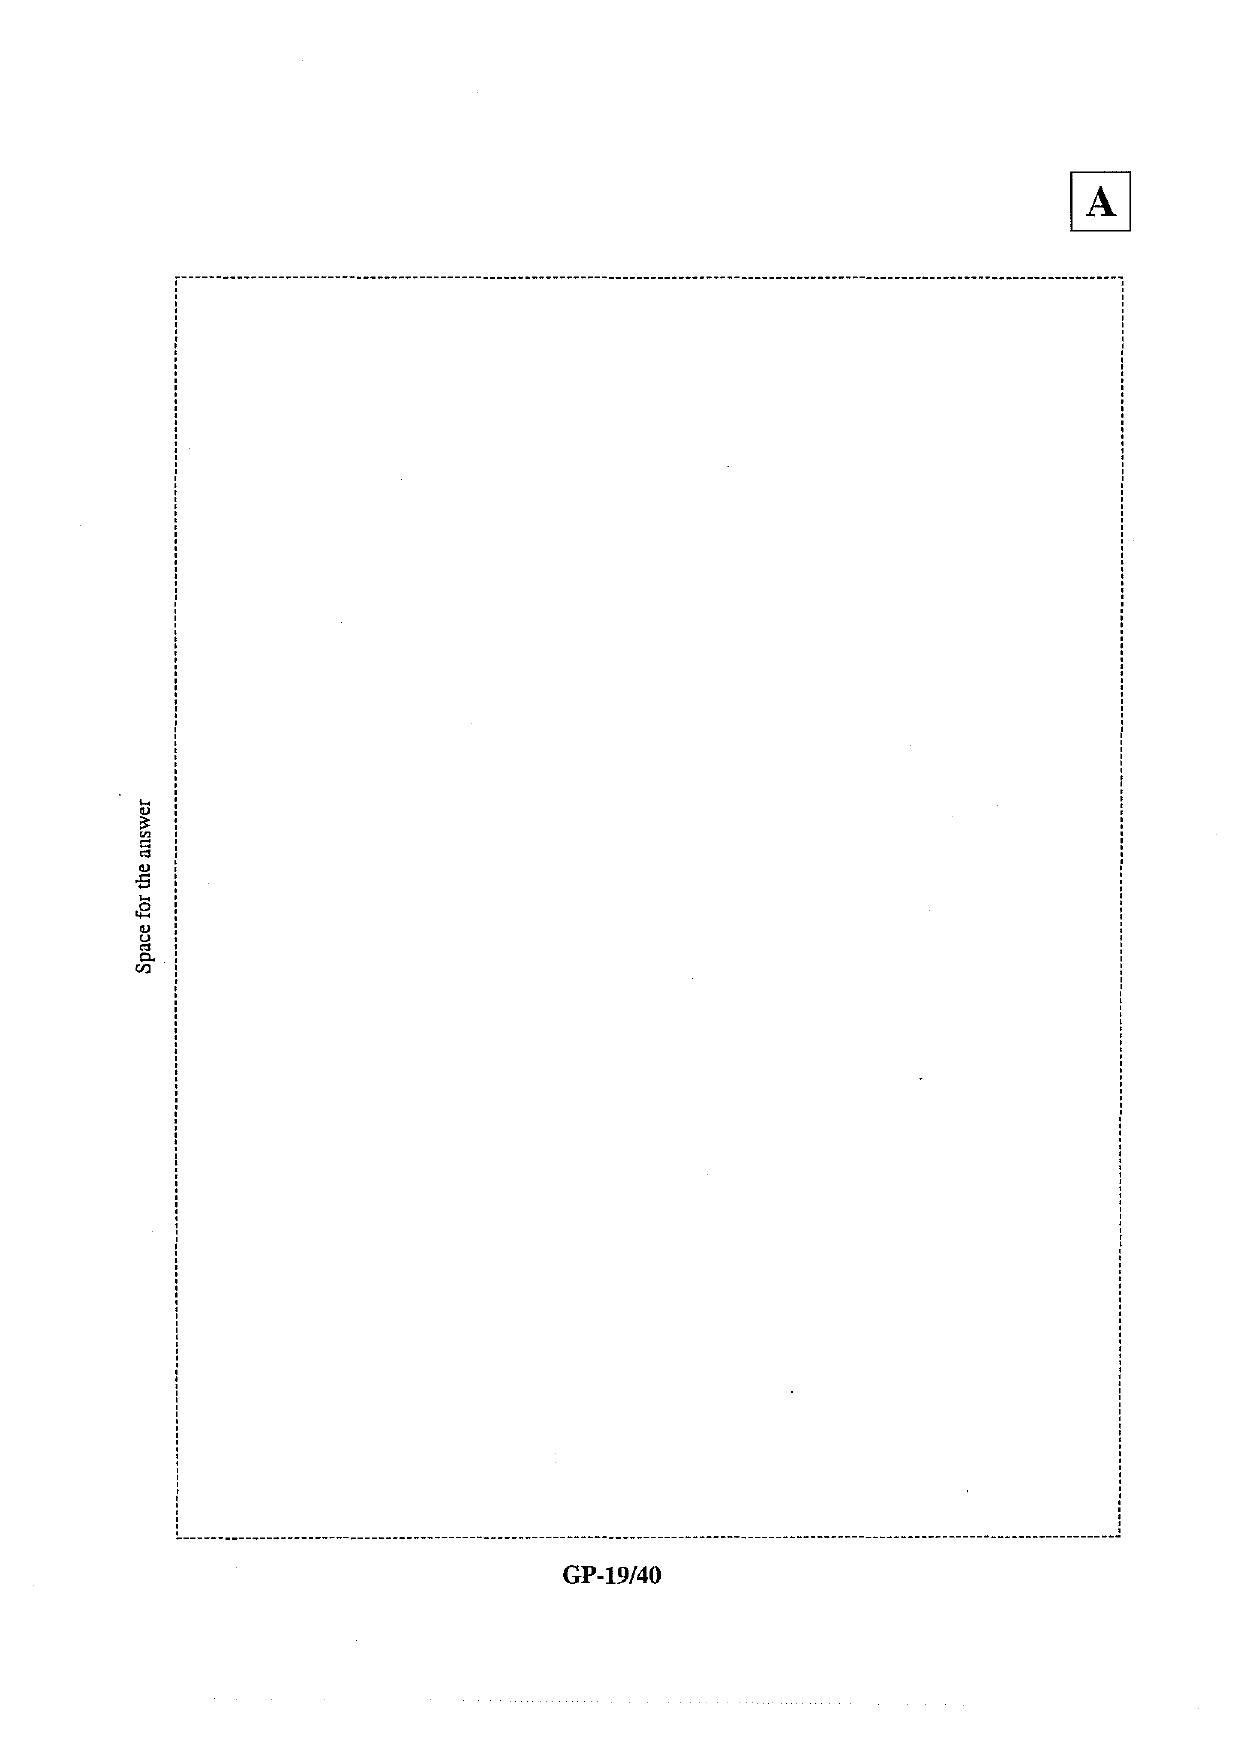 JAM 2013: GP Question Paper - Page 20